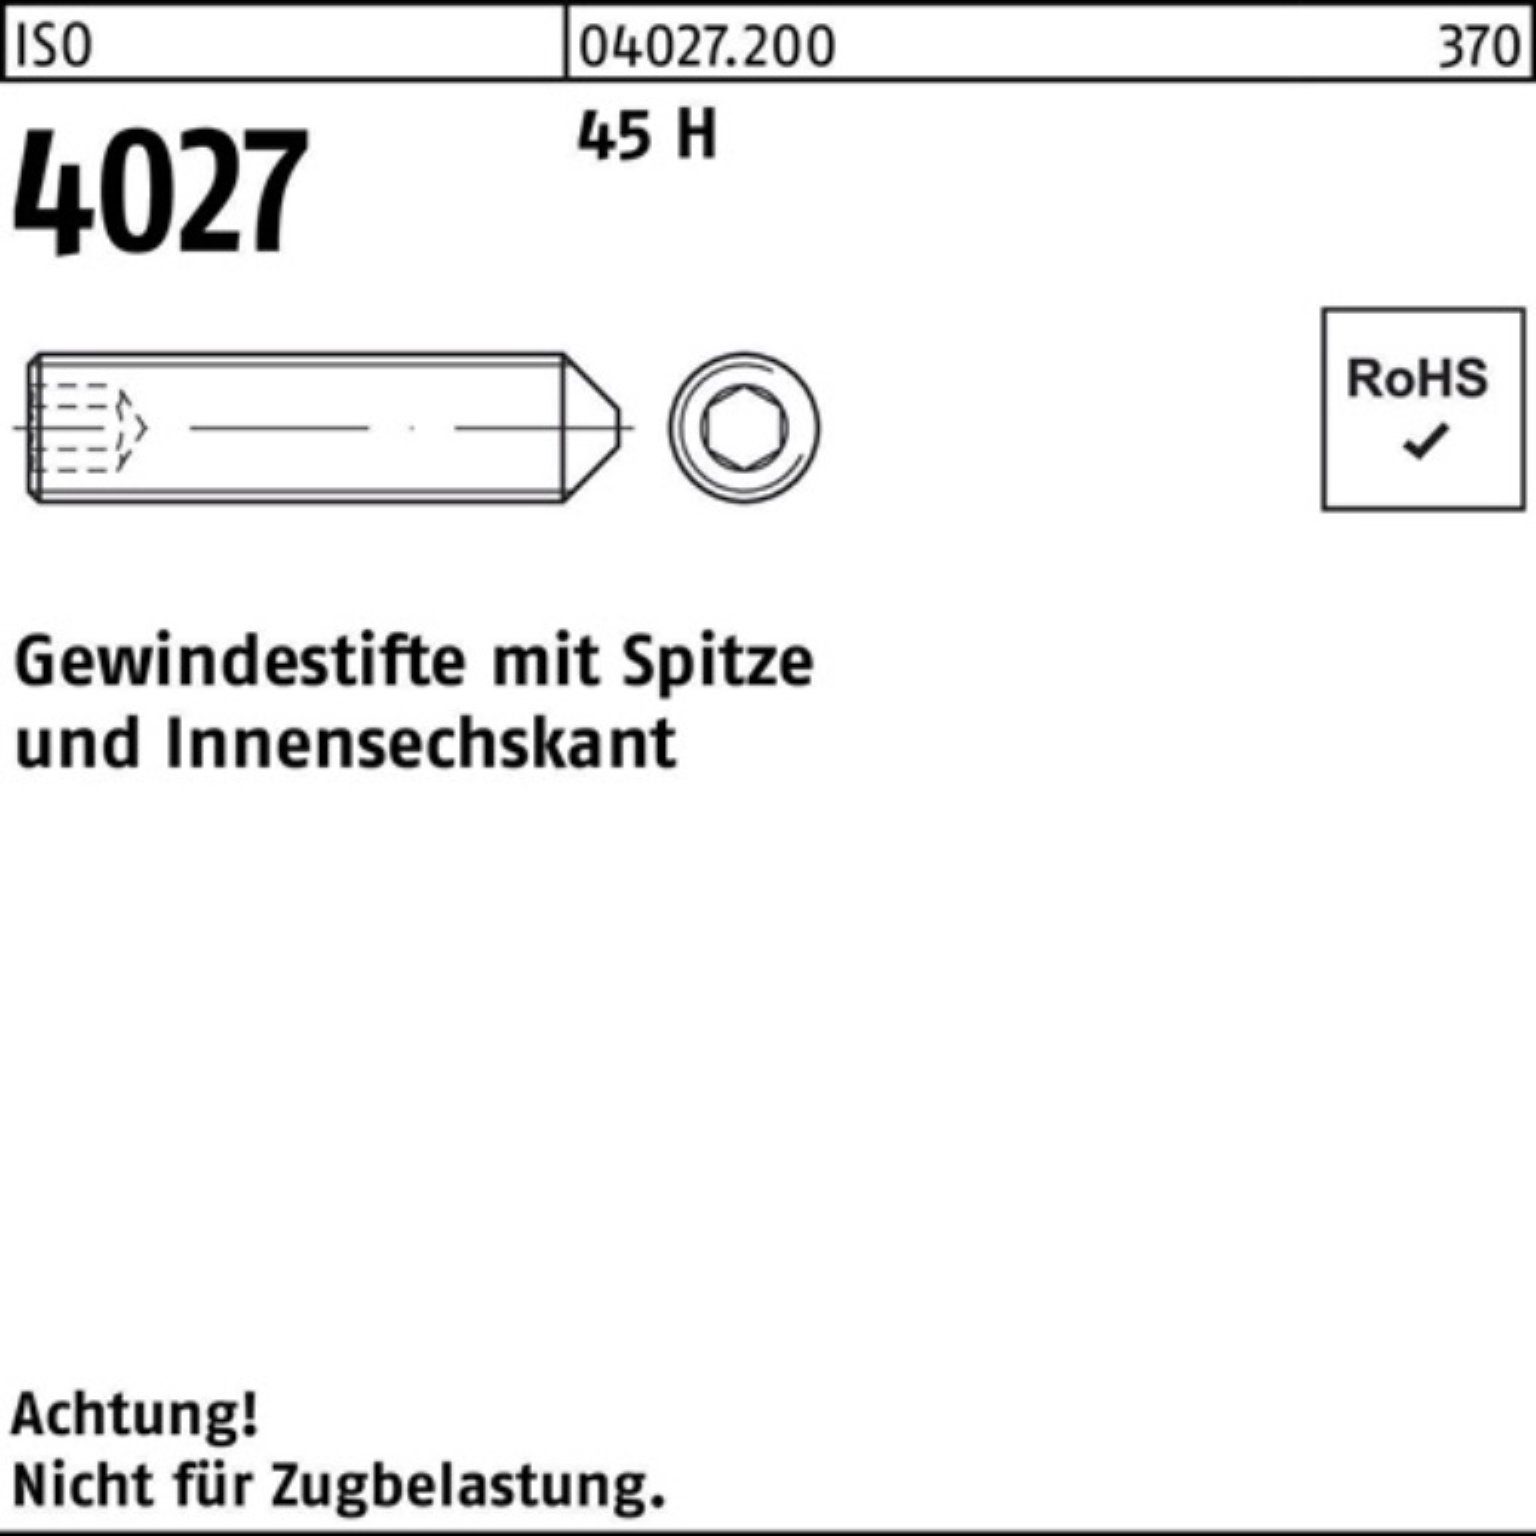 Spitze/Innen-6kt St Gewindebolzen Reyher H ISO 1000 8 1000er M6x Pack 4027 45 Gewindestift